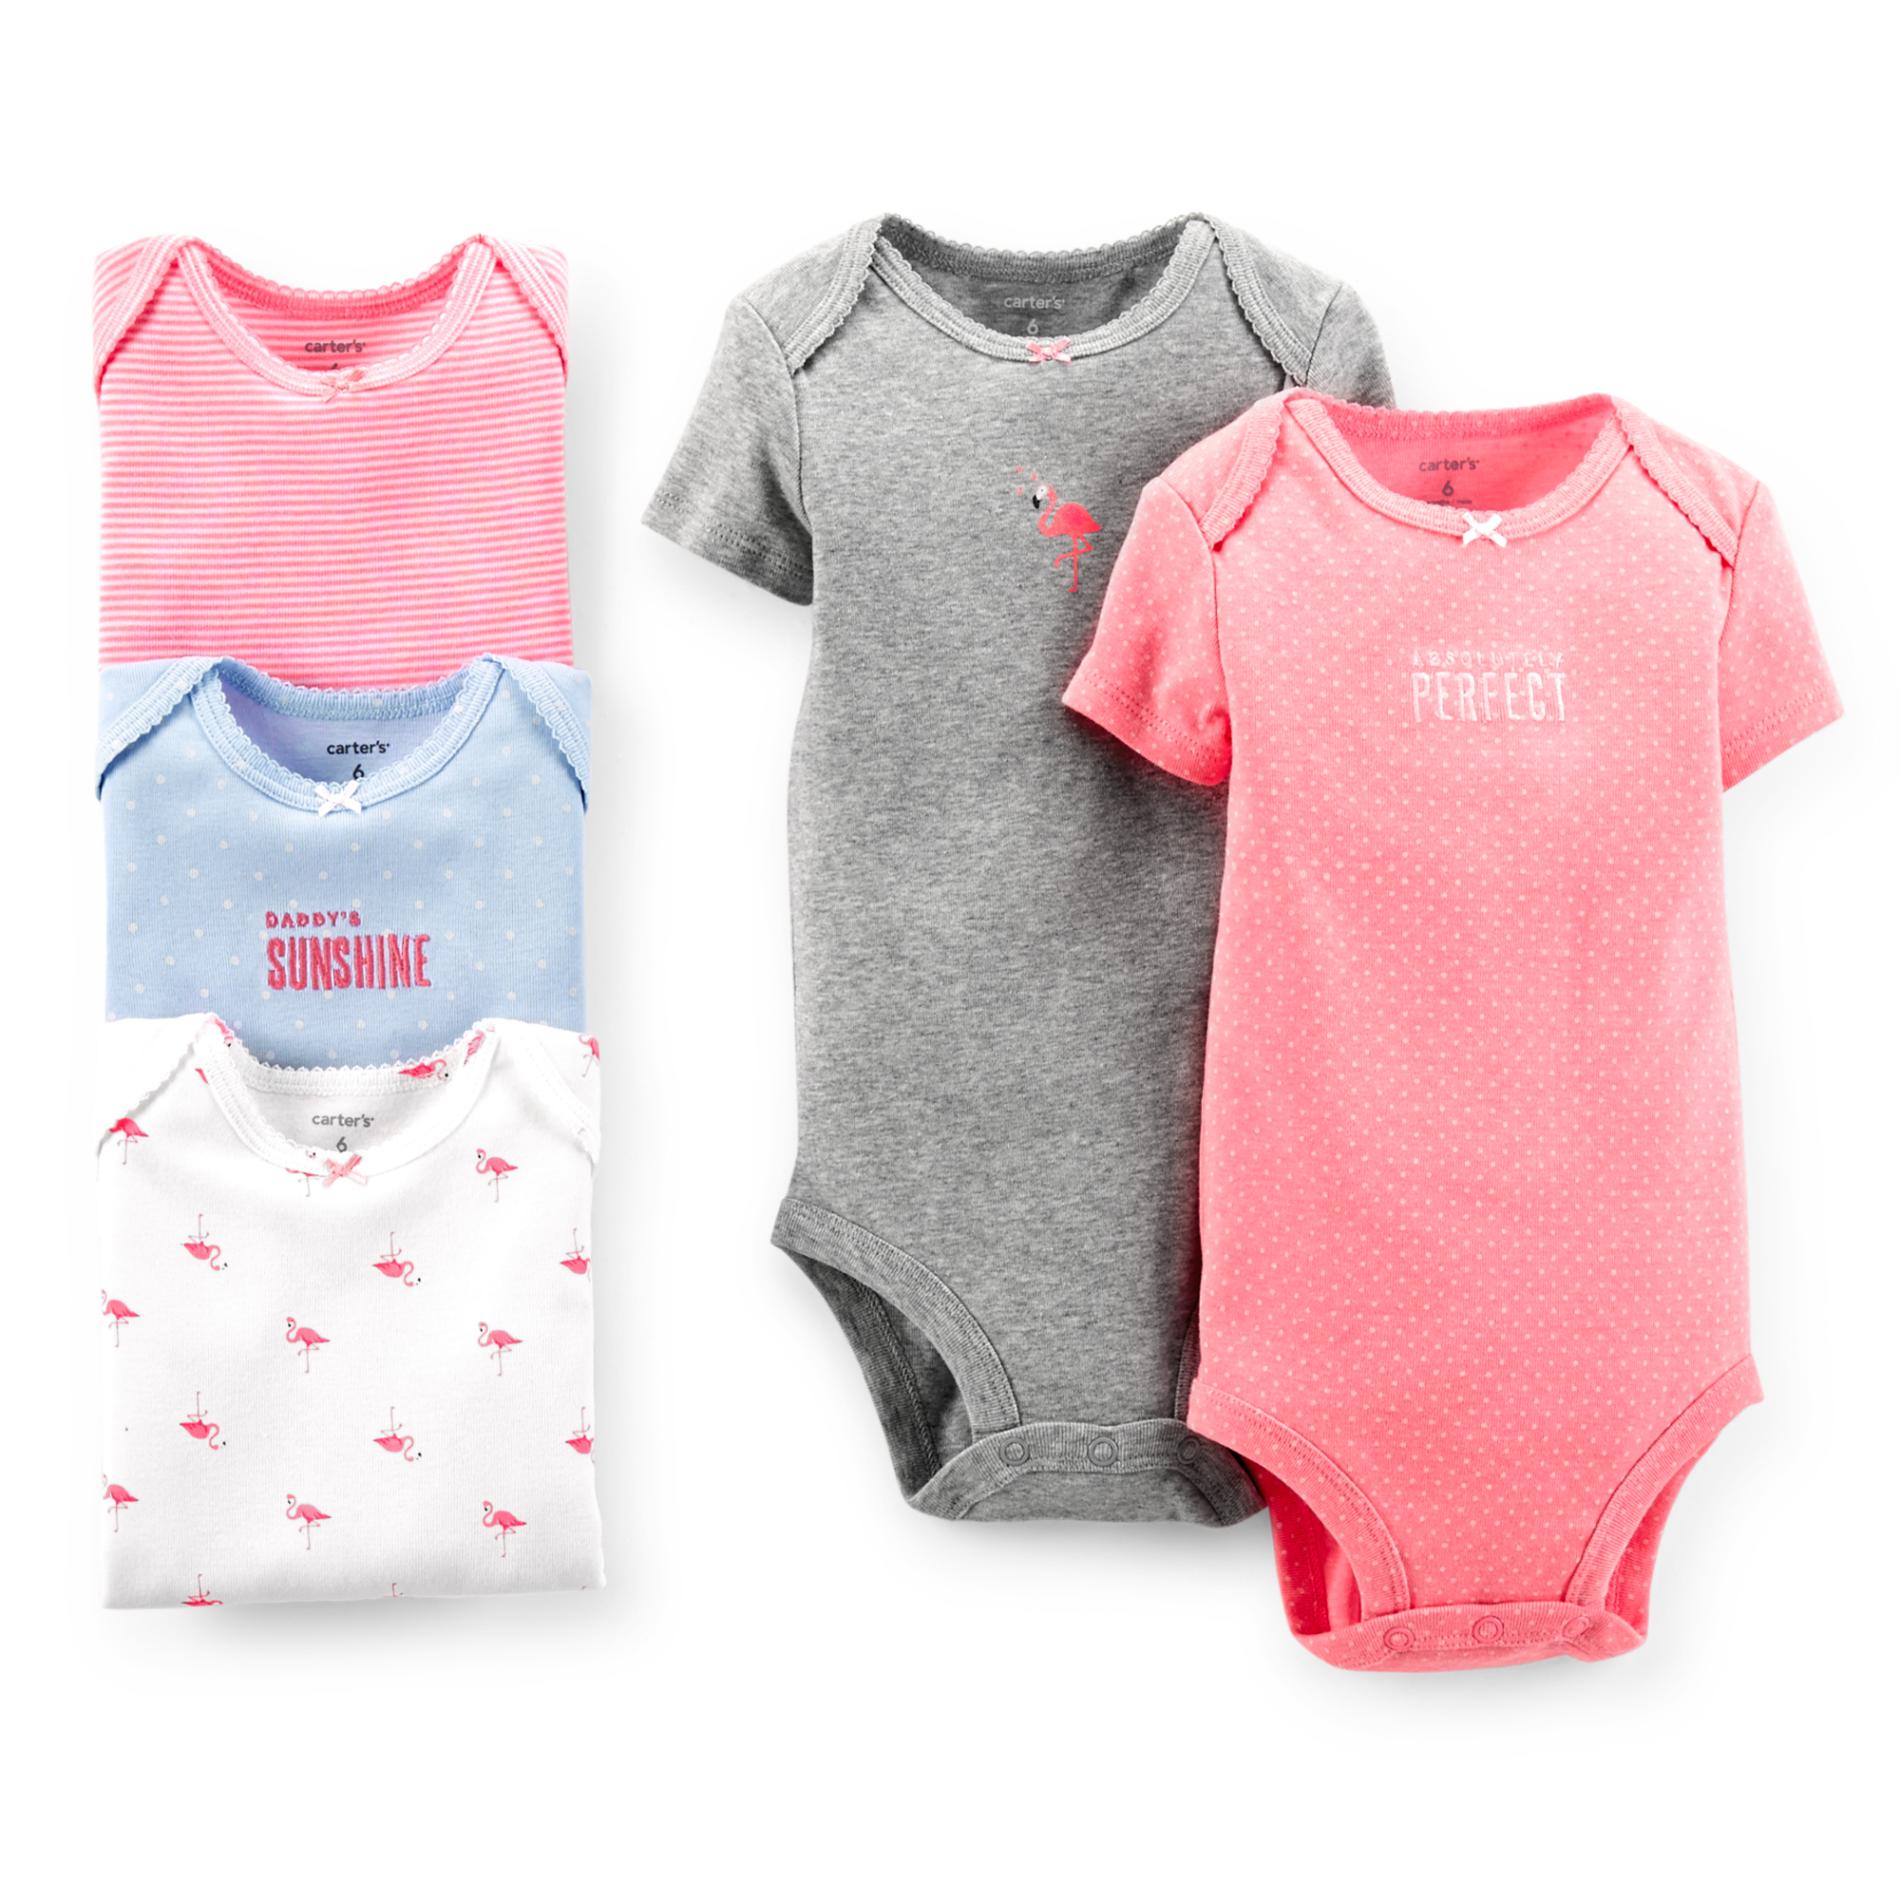 Carter's Newborn & Infant Girl's 5-Pack Bodysuits